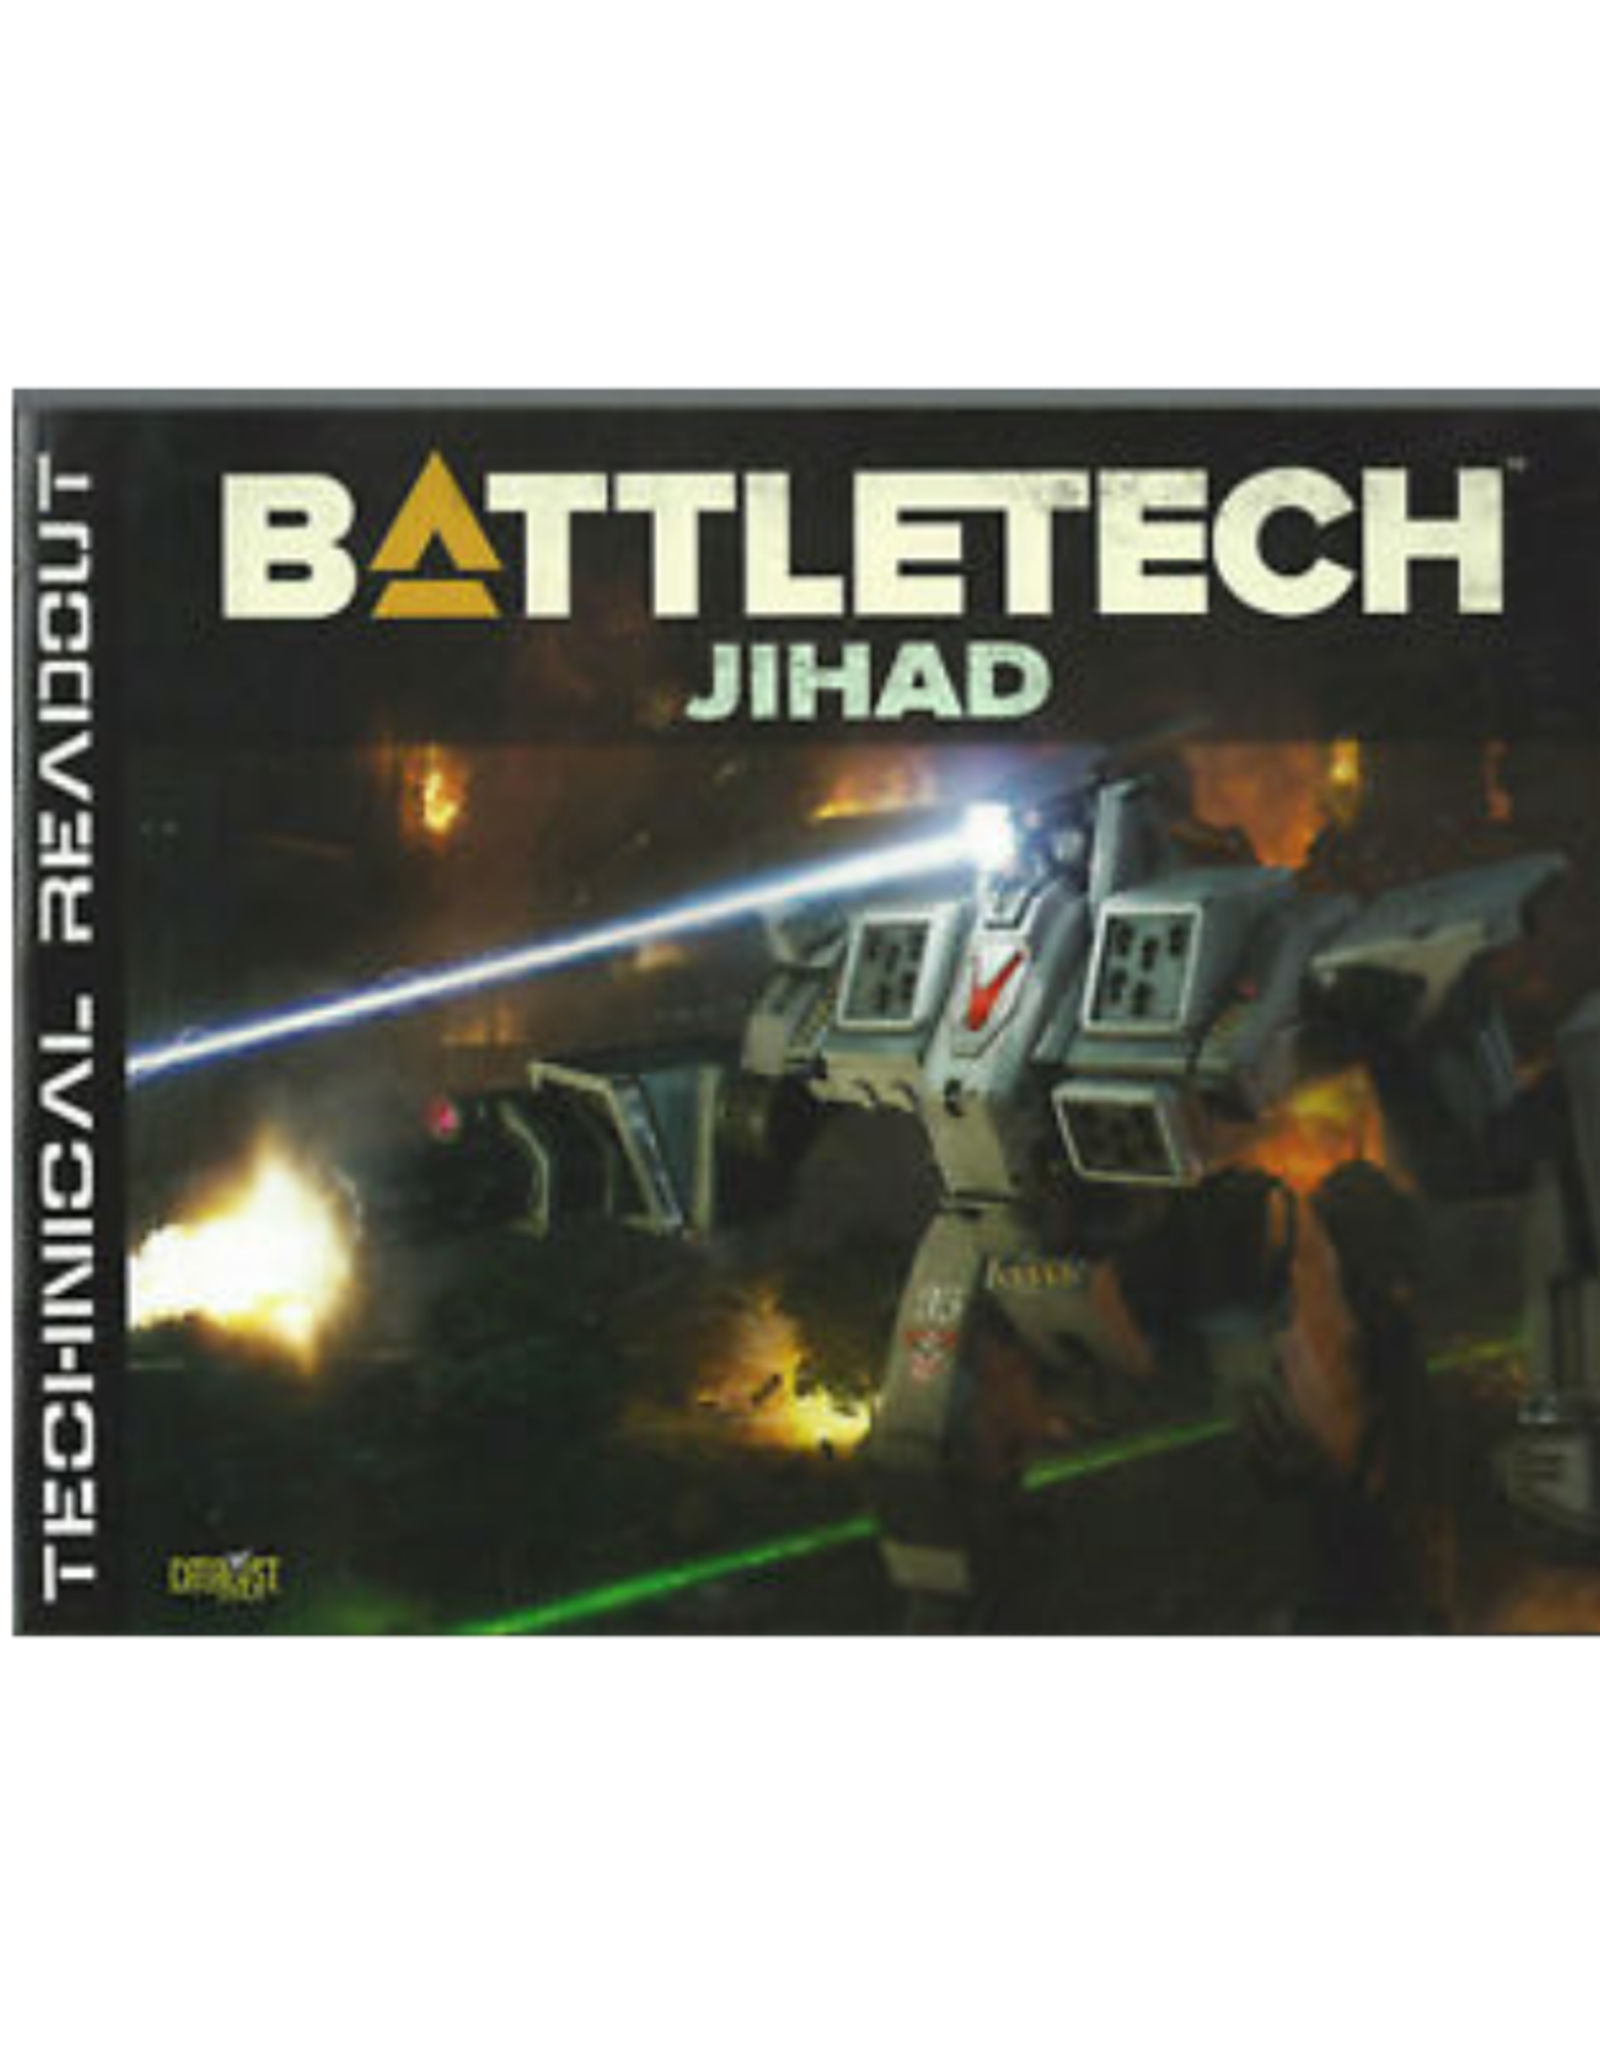 Battletech: Technical Readout (Jihad)